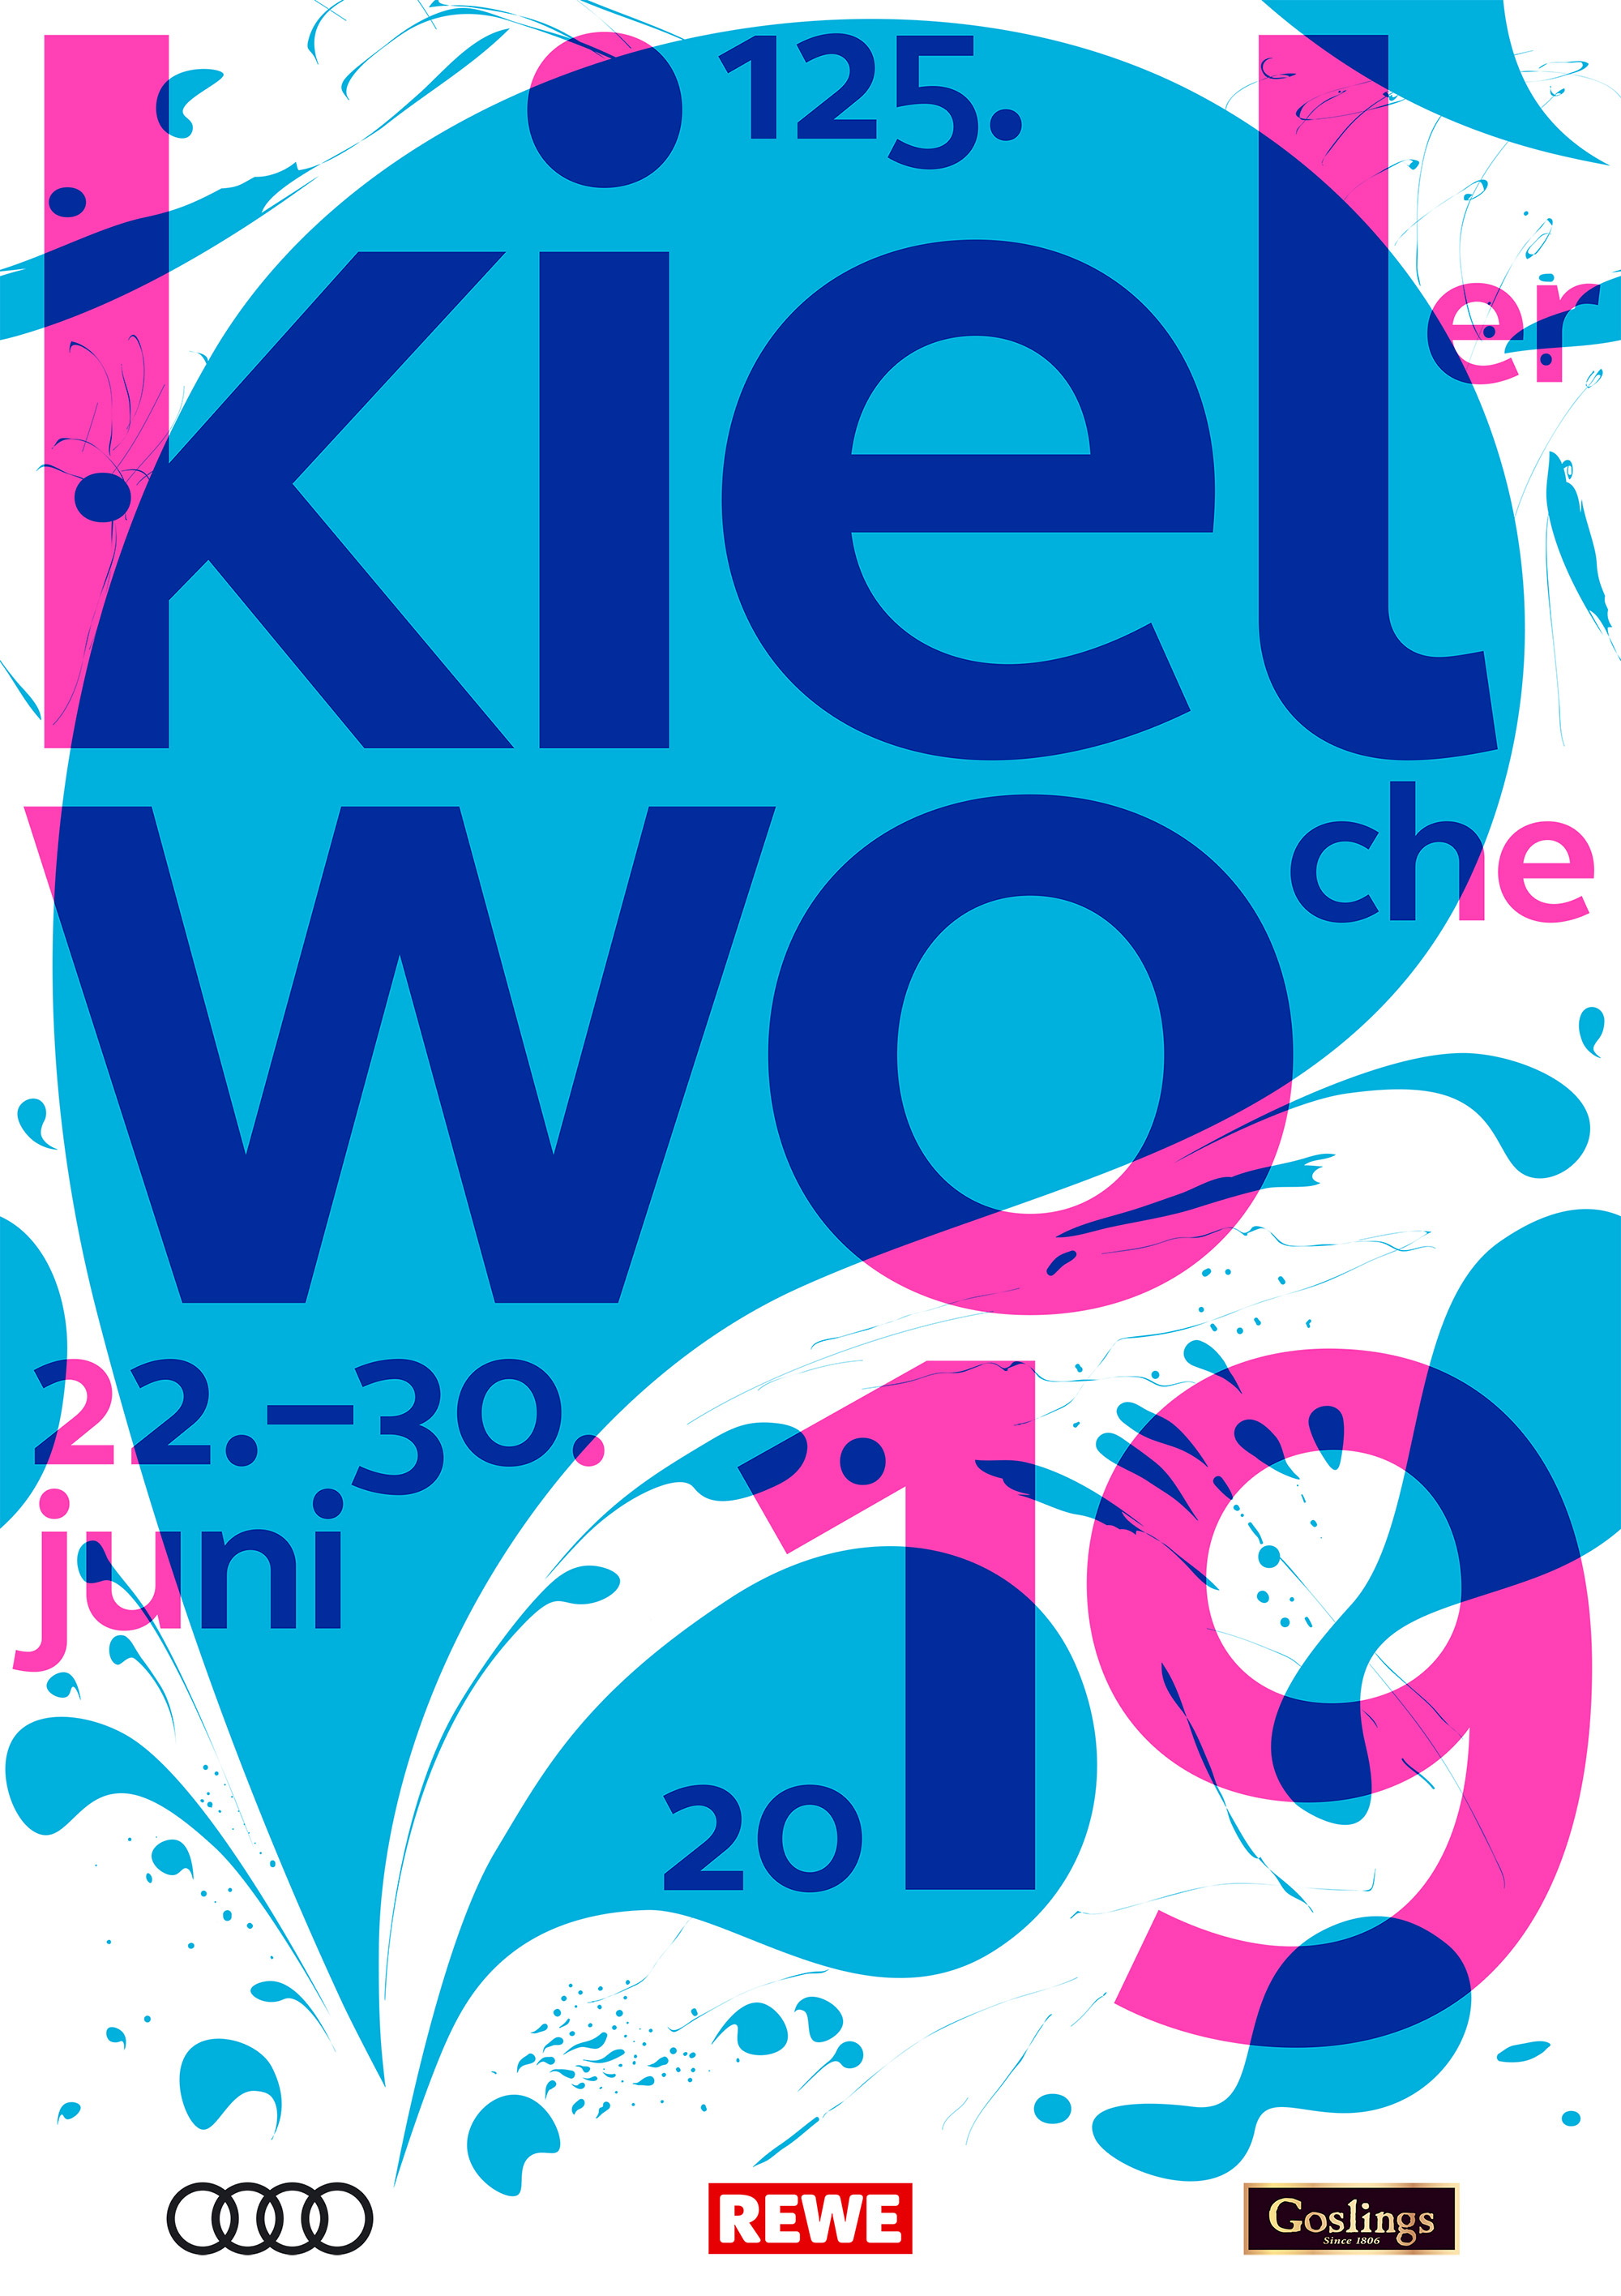 Kieler Woche 2019 Plakat, Quelle: Stadtverwaltung Kiel